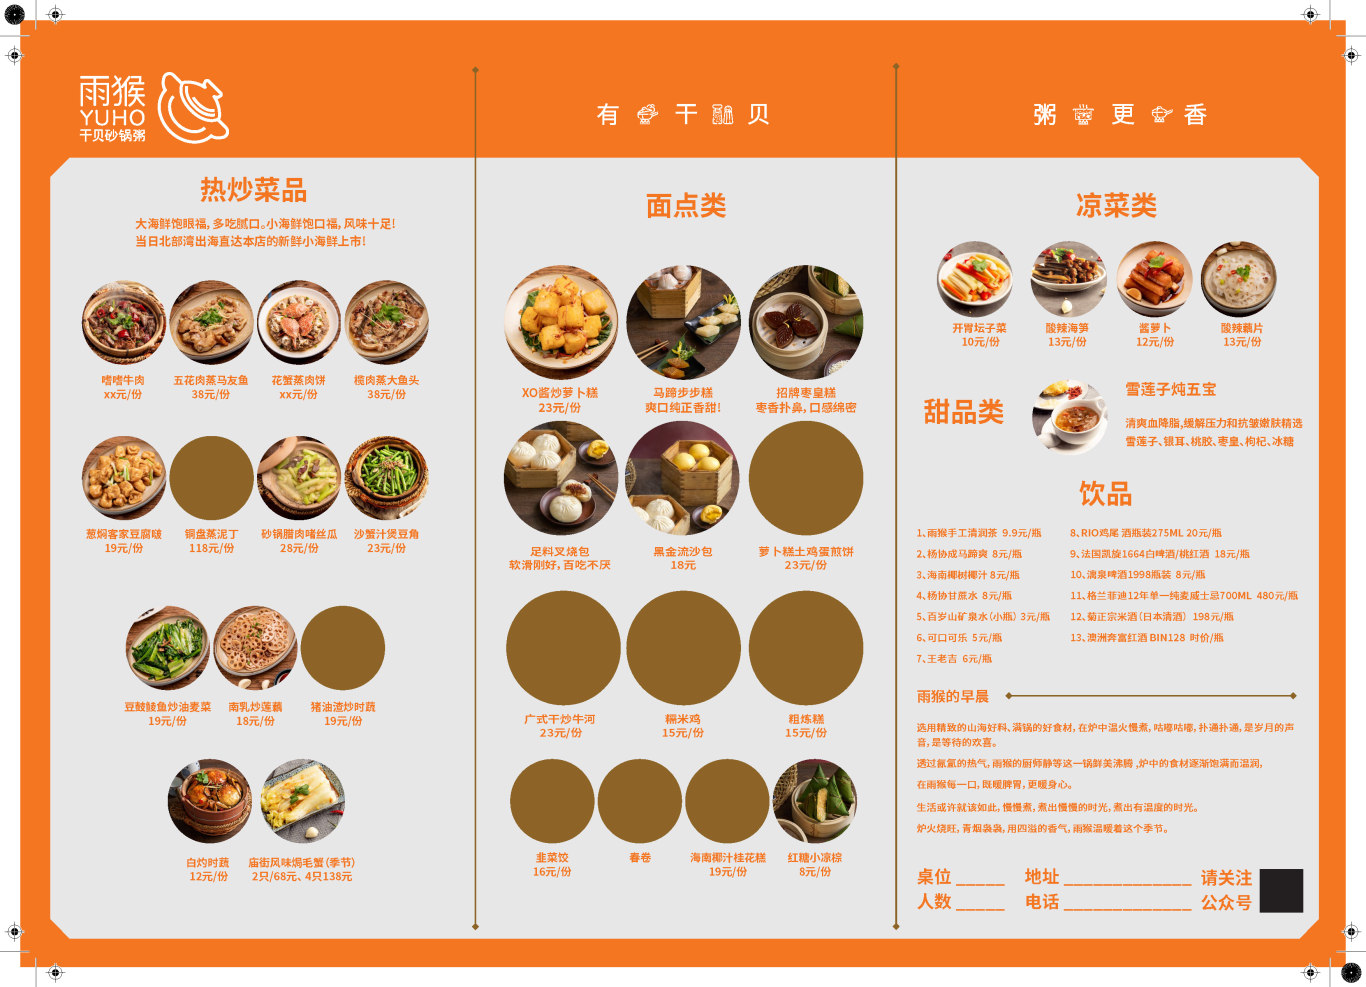 雨猴砂锅粥 - 餐厅VI设计/品牌用品延展/空间导视/宣传物料图29